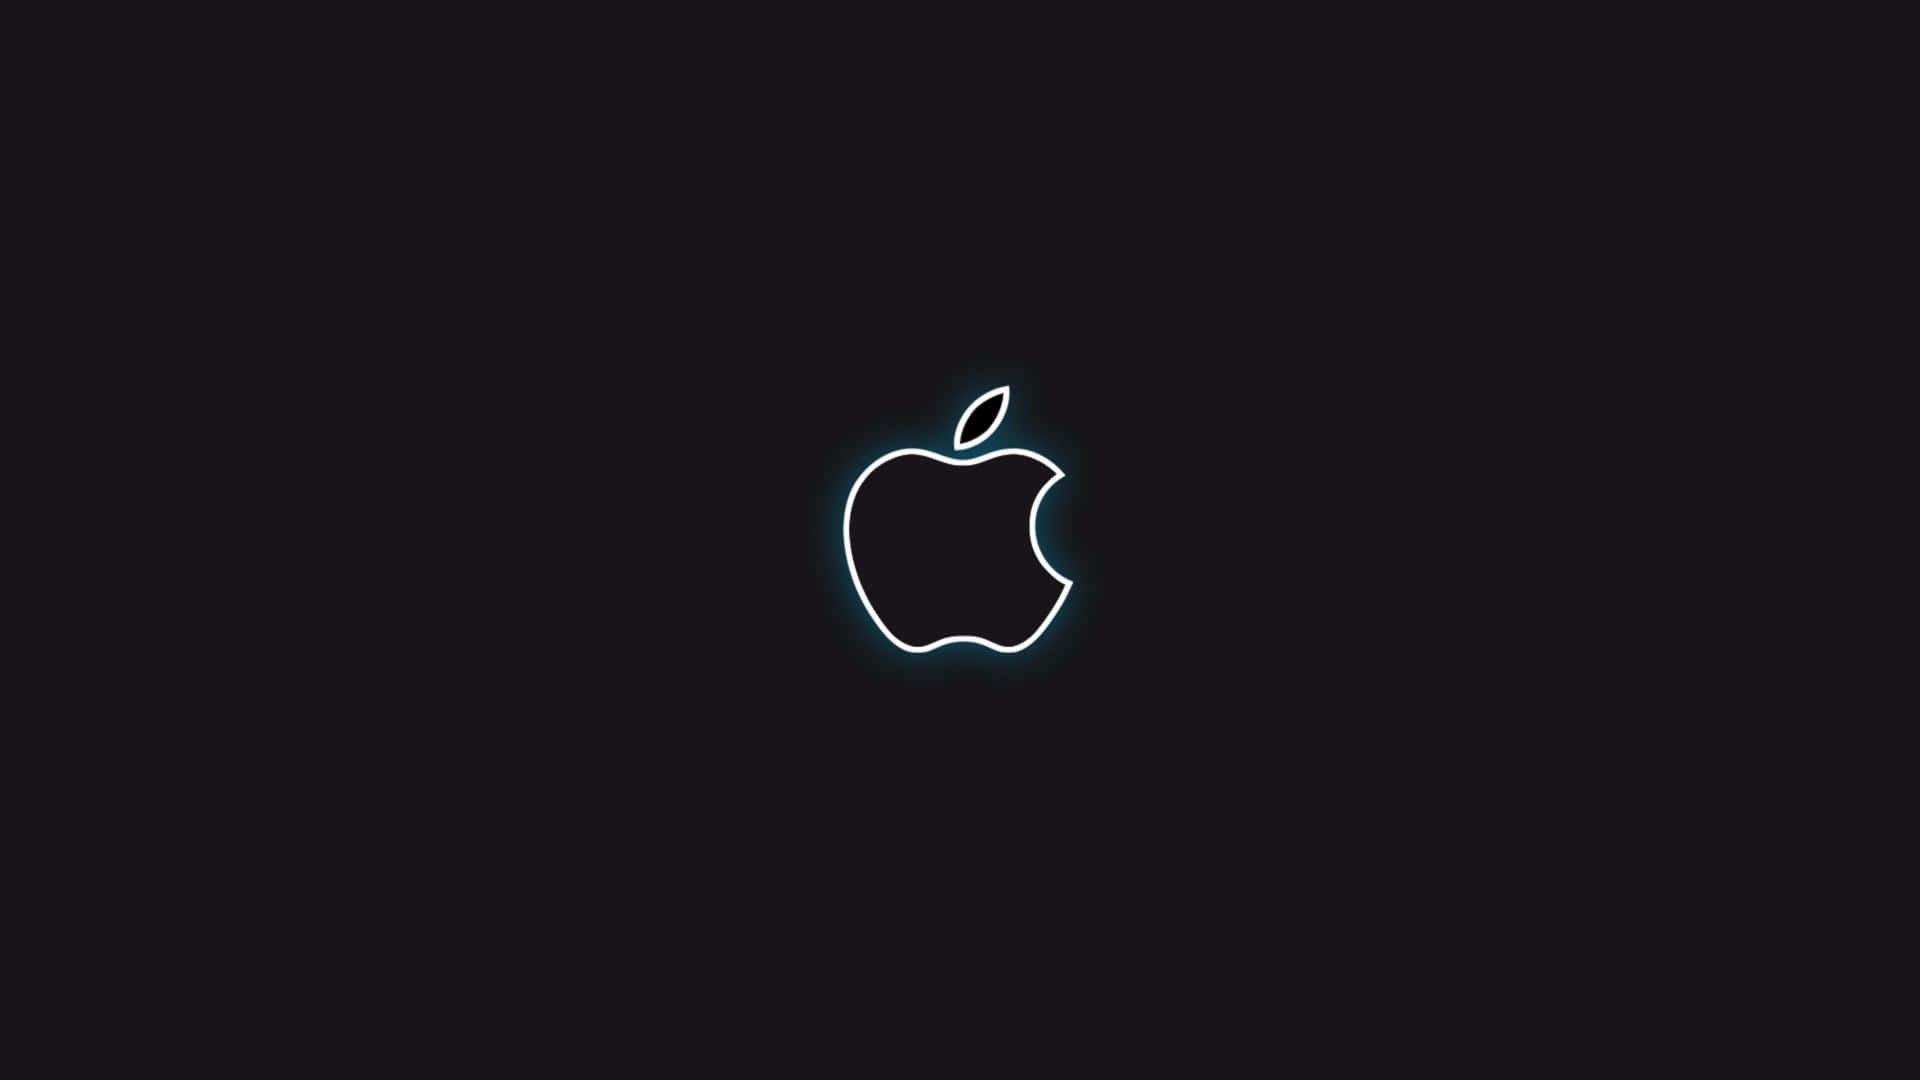 Black Apple Logo With White Outline Wallpaper